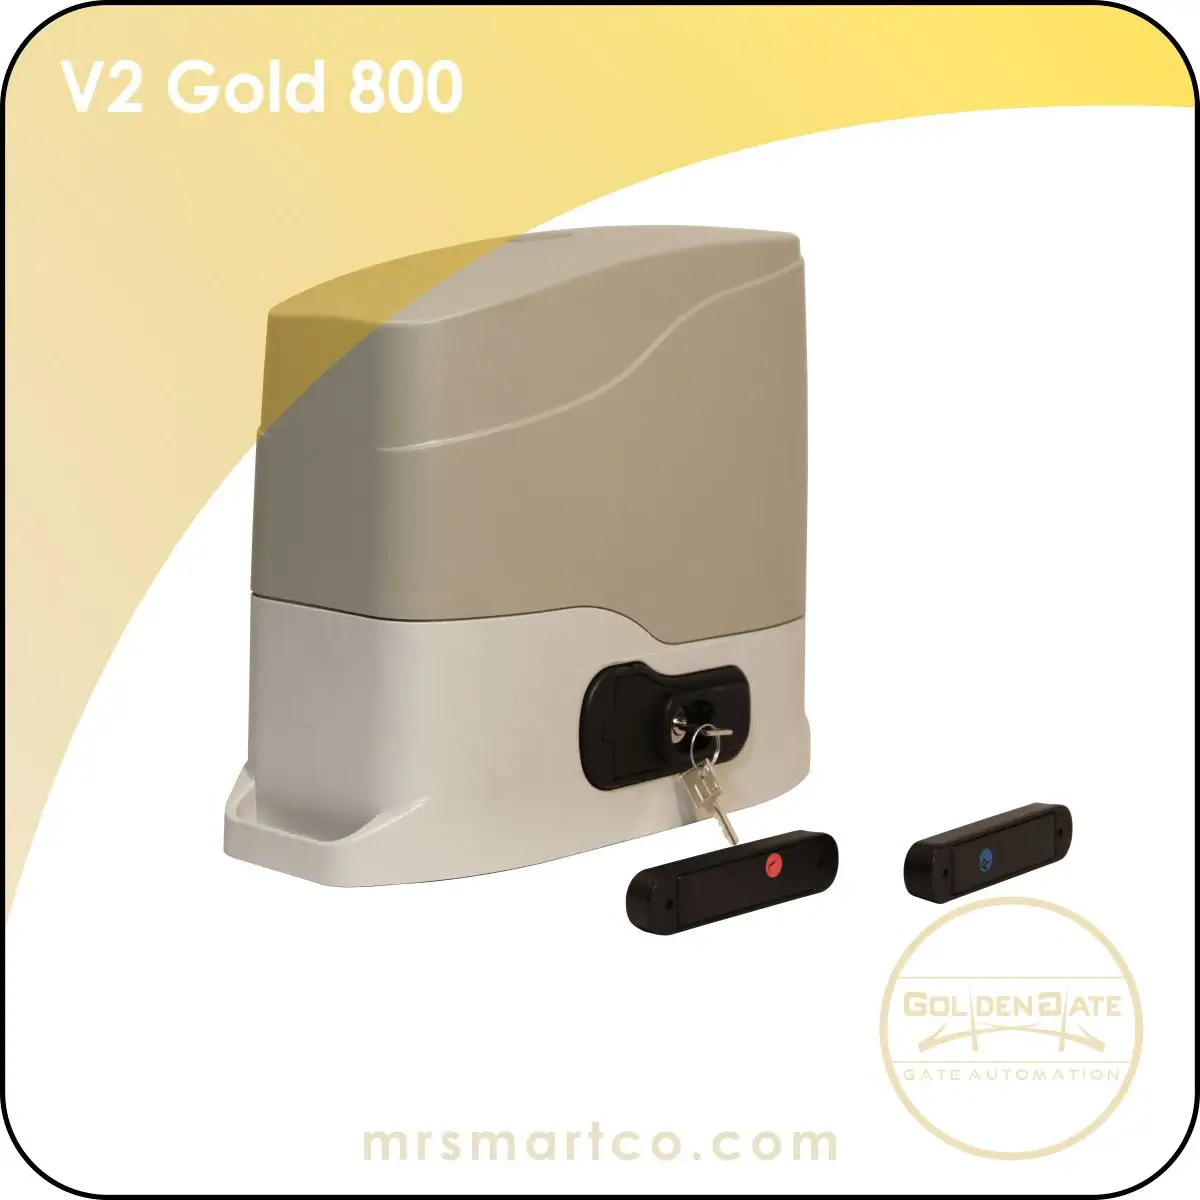 V2 Gold 800